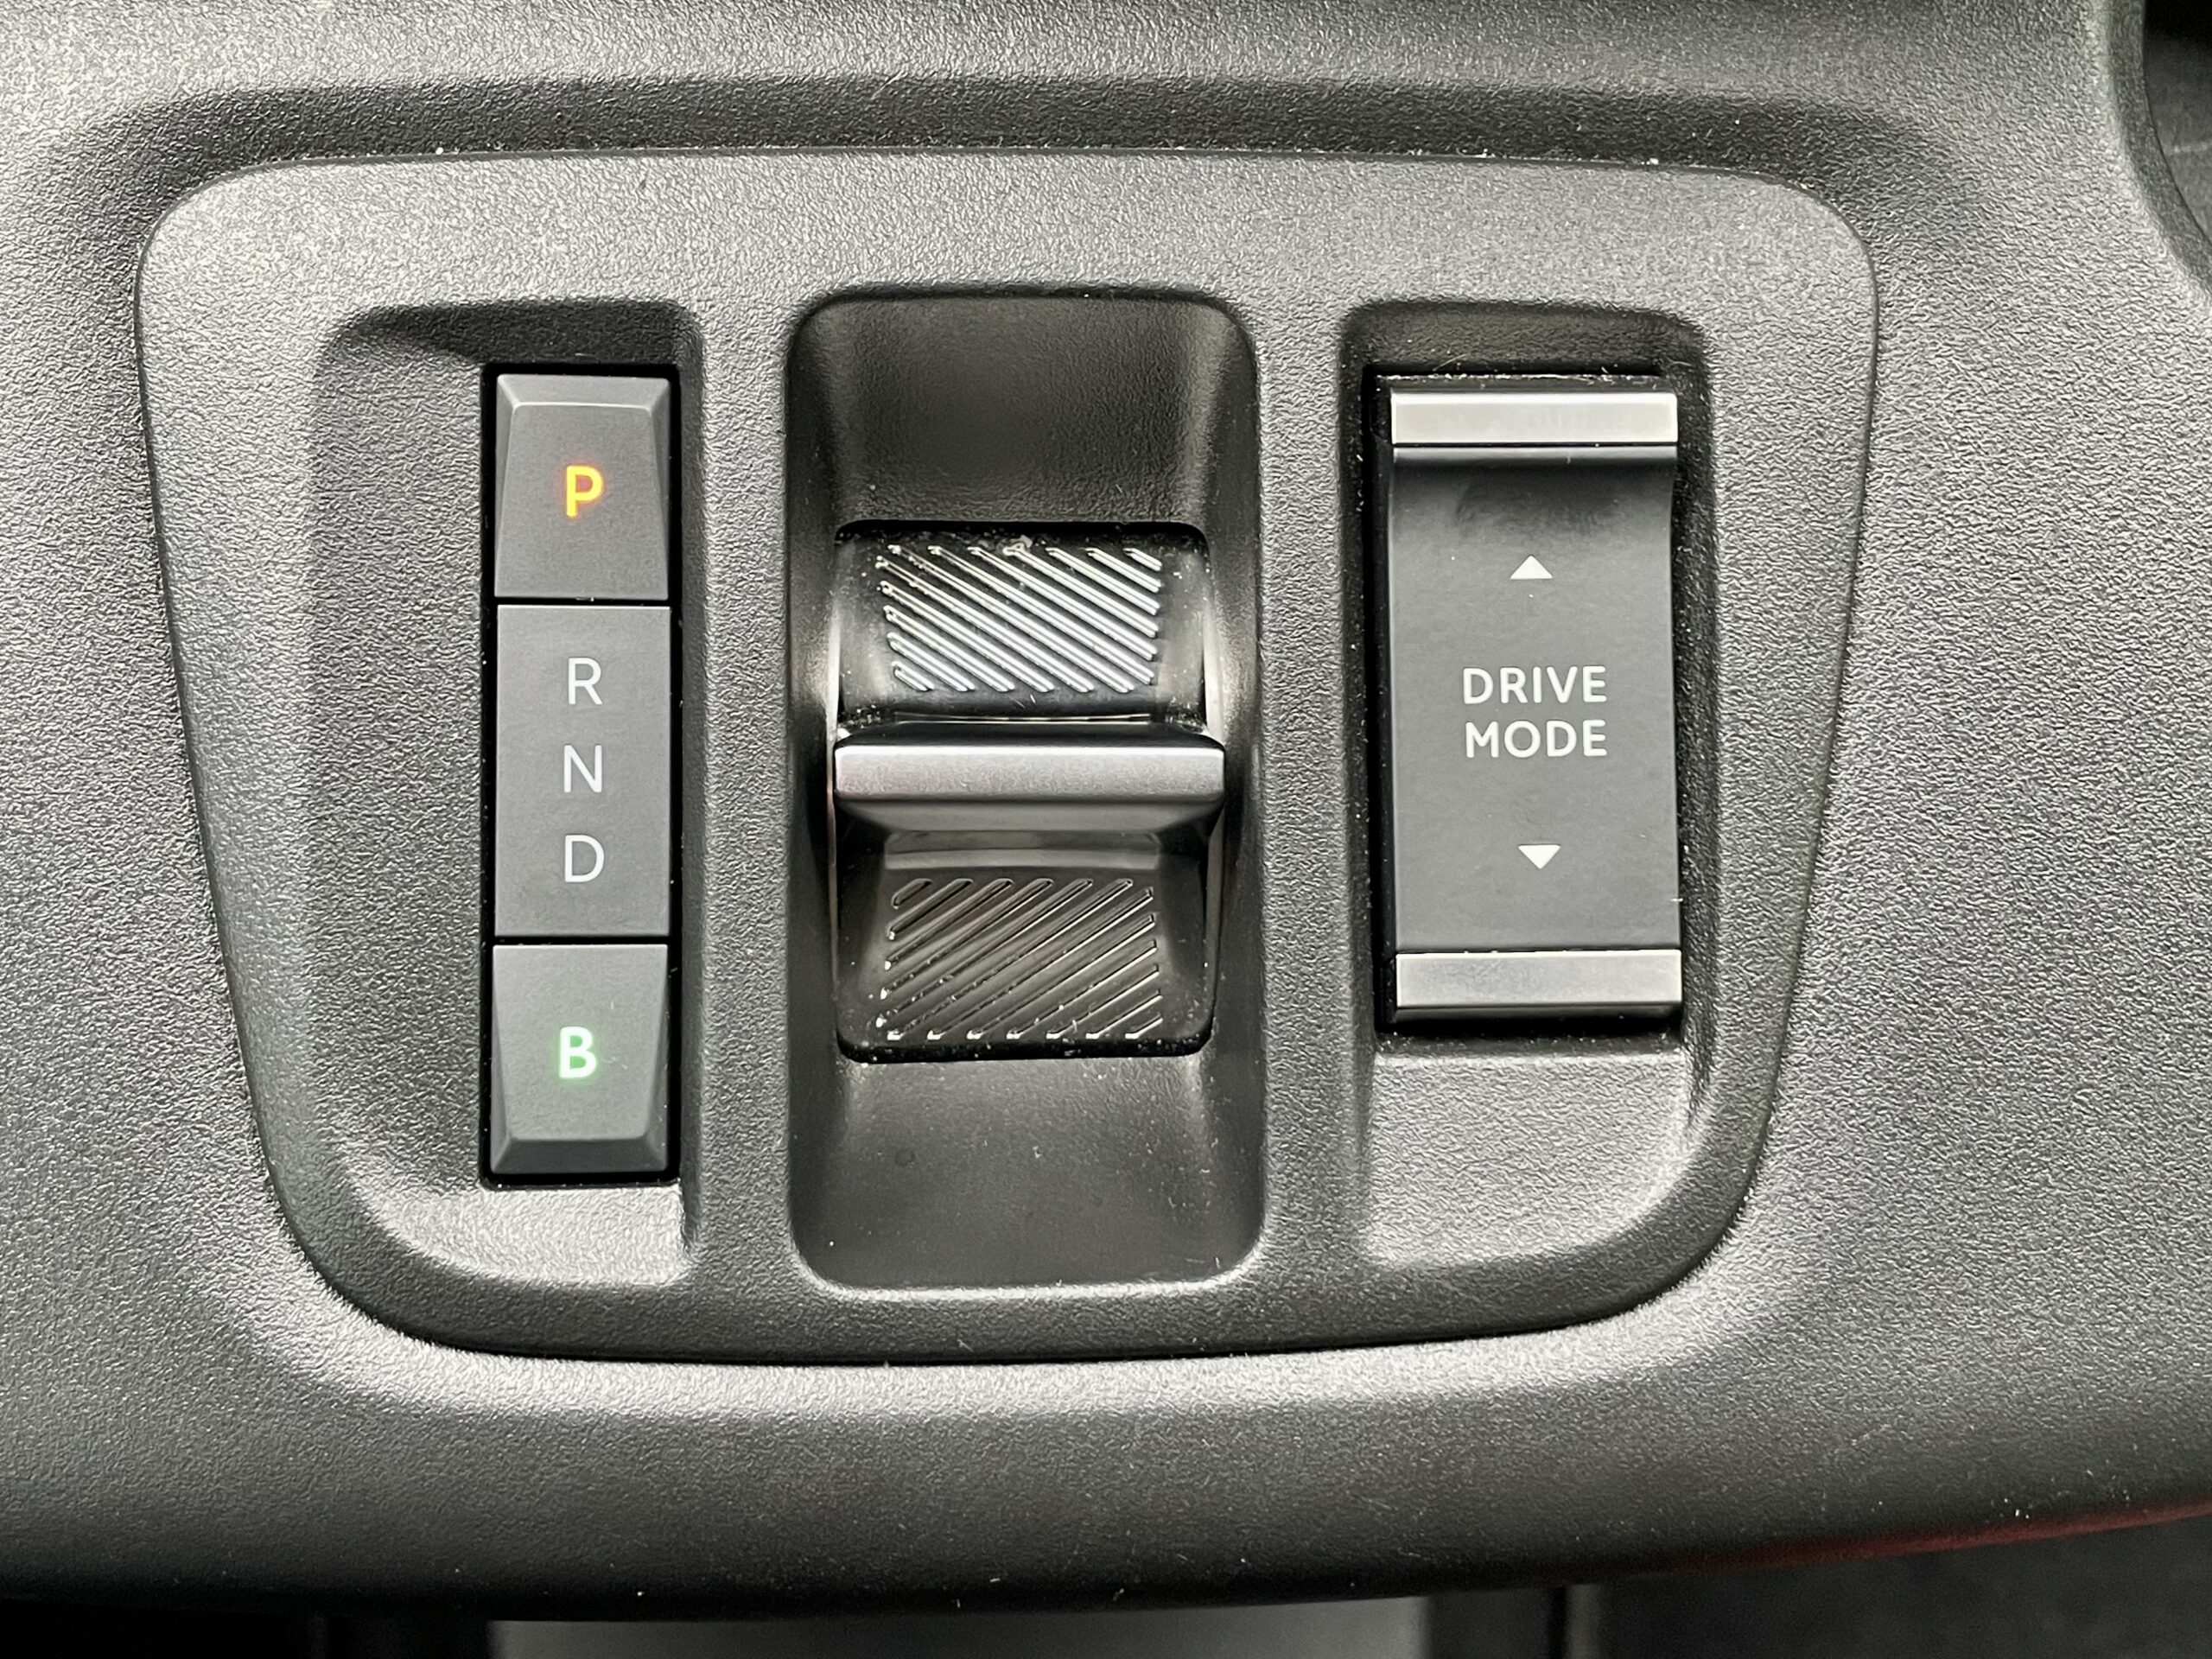 Przełącznik napędów jest umieszczony na konsoli środkowej